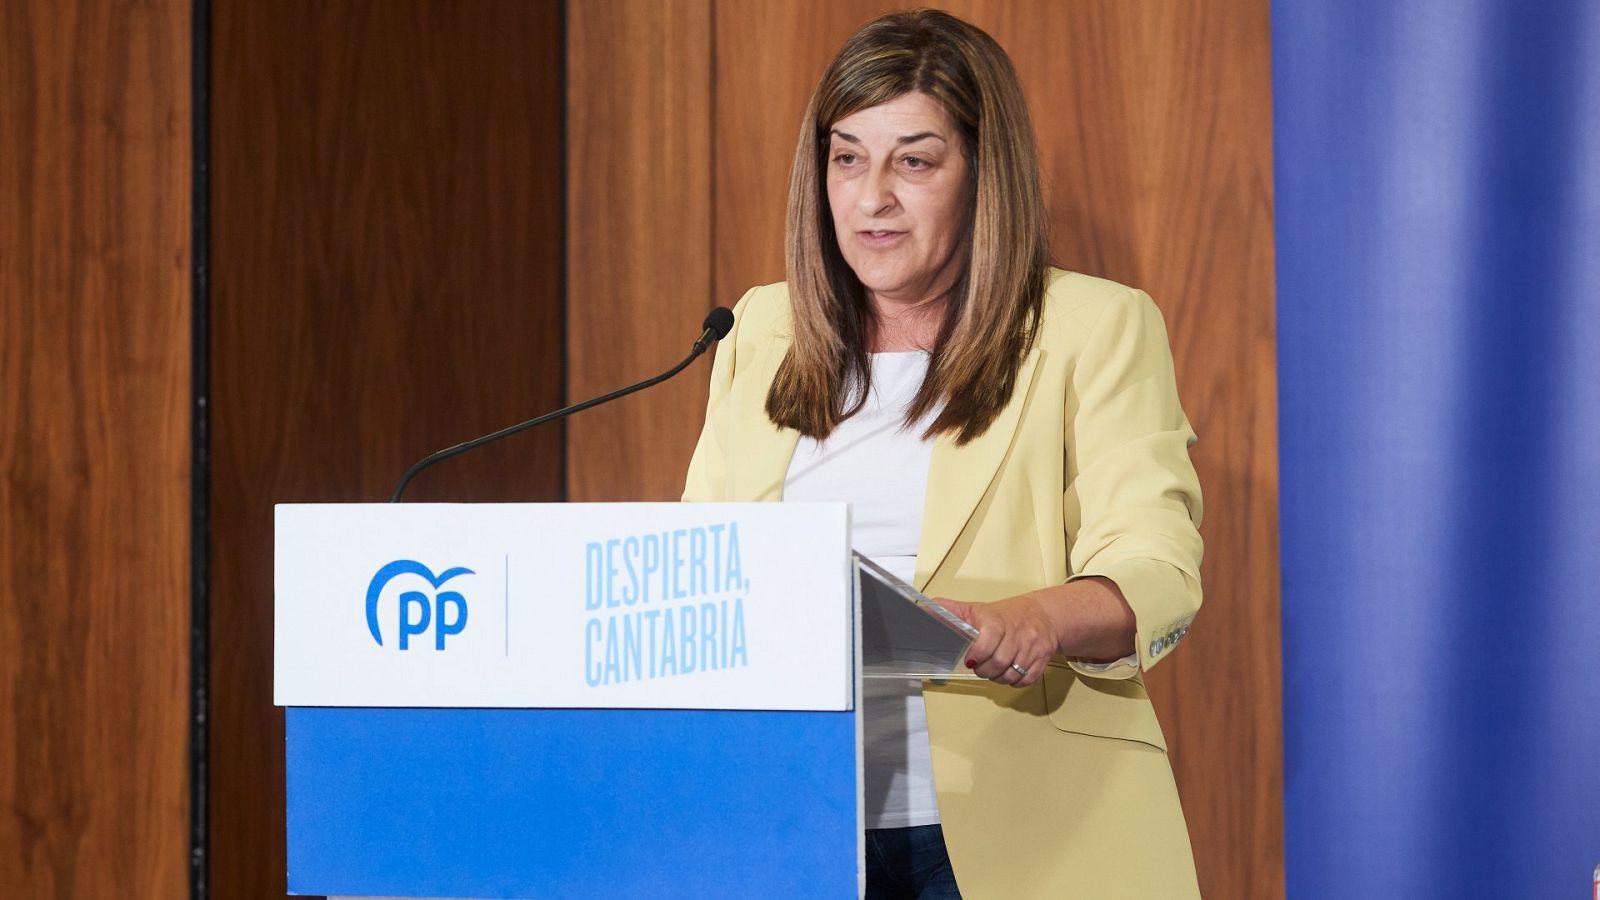 La líder del PP de Cantabria, María José Saénz de Buruaga